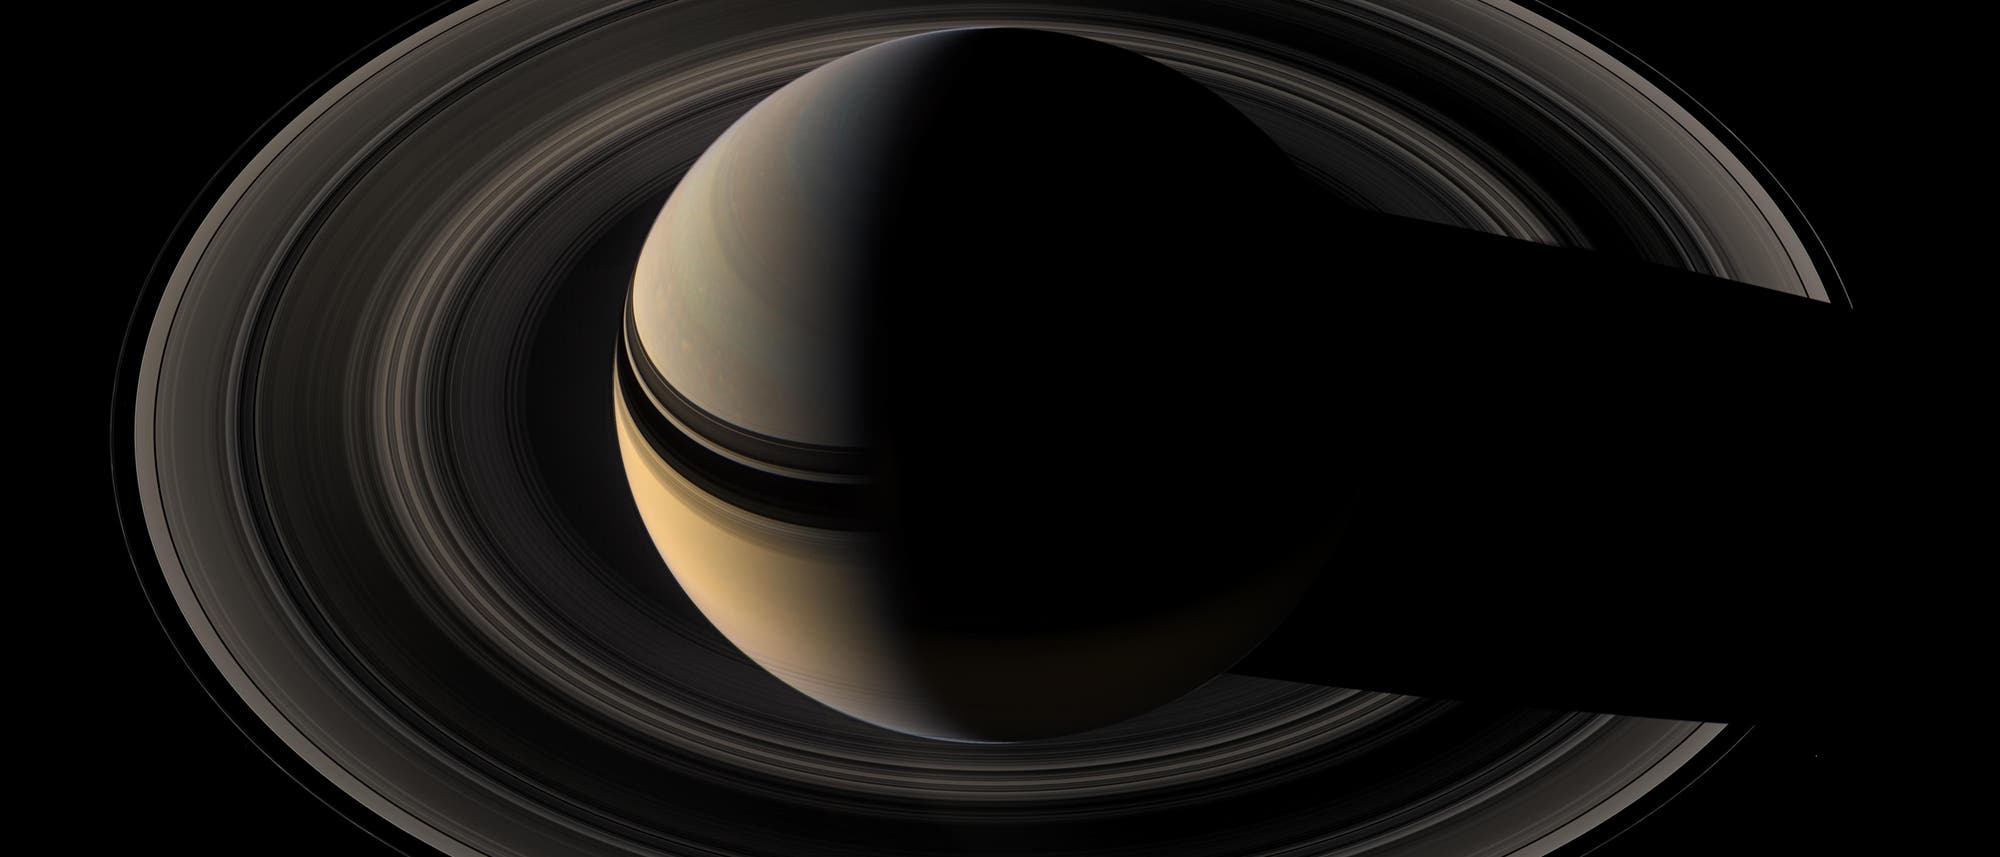 Die Raumsonde Cassini ist am 15. September 2017 planmäßig auf den Saturn gestürzt. Bis dahin hatte die Mission mehr als ein Jahrzehnt lang einzigartige Aufnahmen und Daten vom Ringplaneten übertragen. Damit hat sie unser Bild von dem Gasriesen und seinen Begleitern revolutioniert.